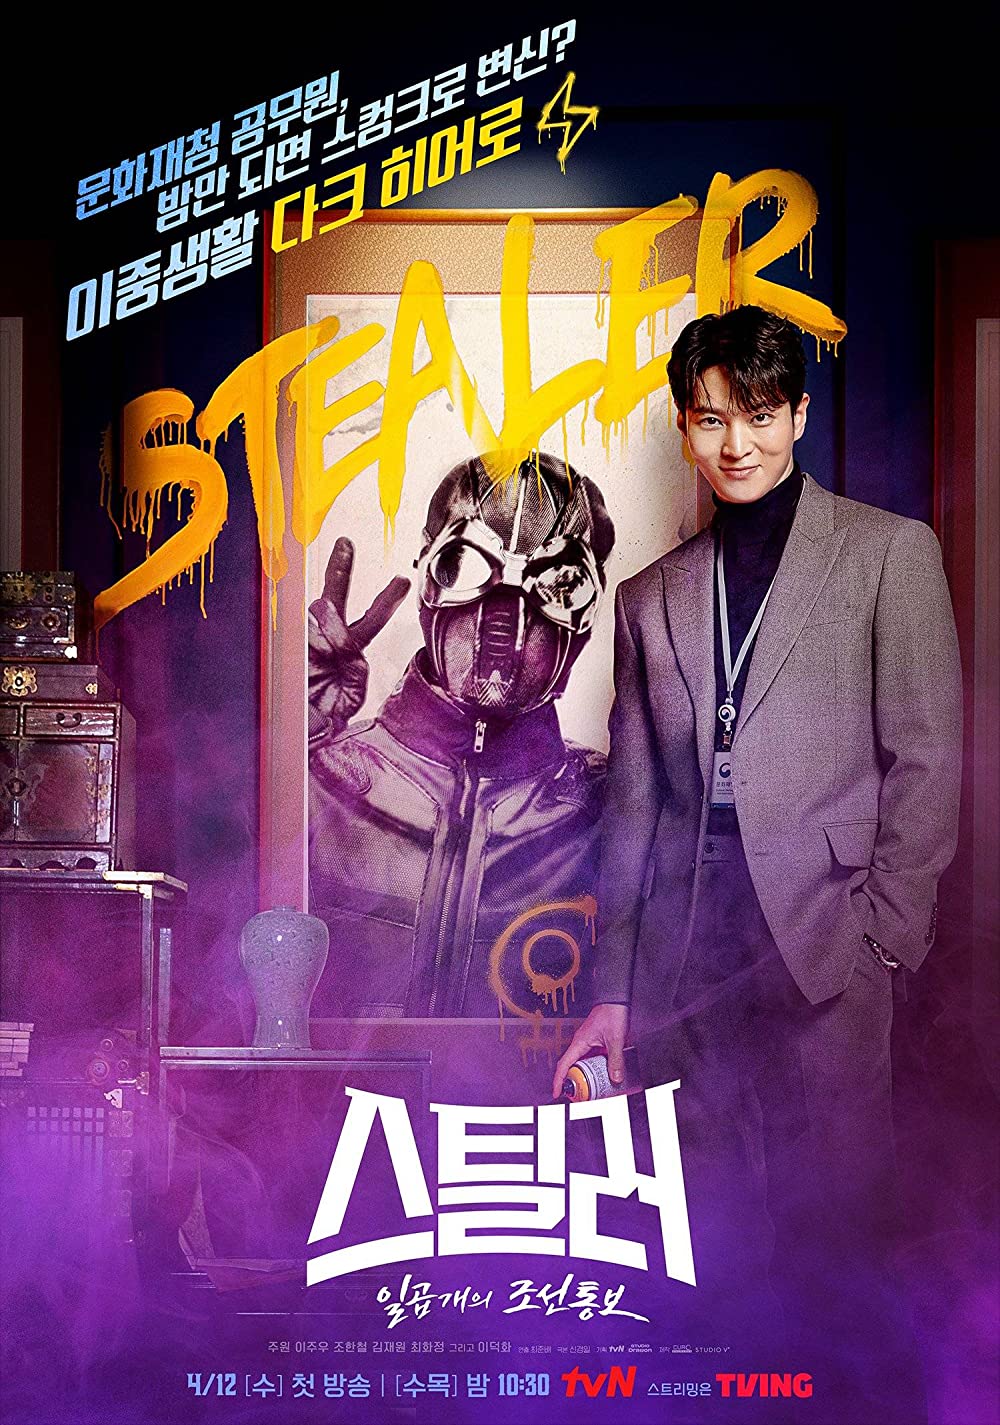 ดูหนังออนไลน์ฟรี ซีรี่ส์เกาหลี Stealer: The Treasure Keeper | ซับไทย (จบ)